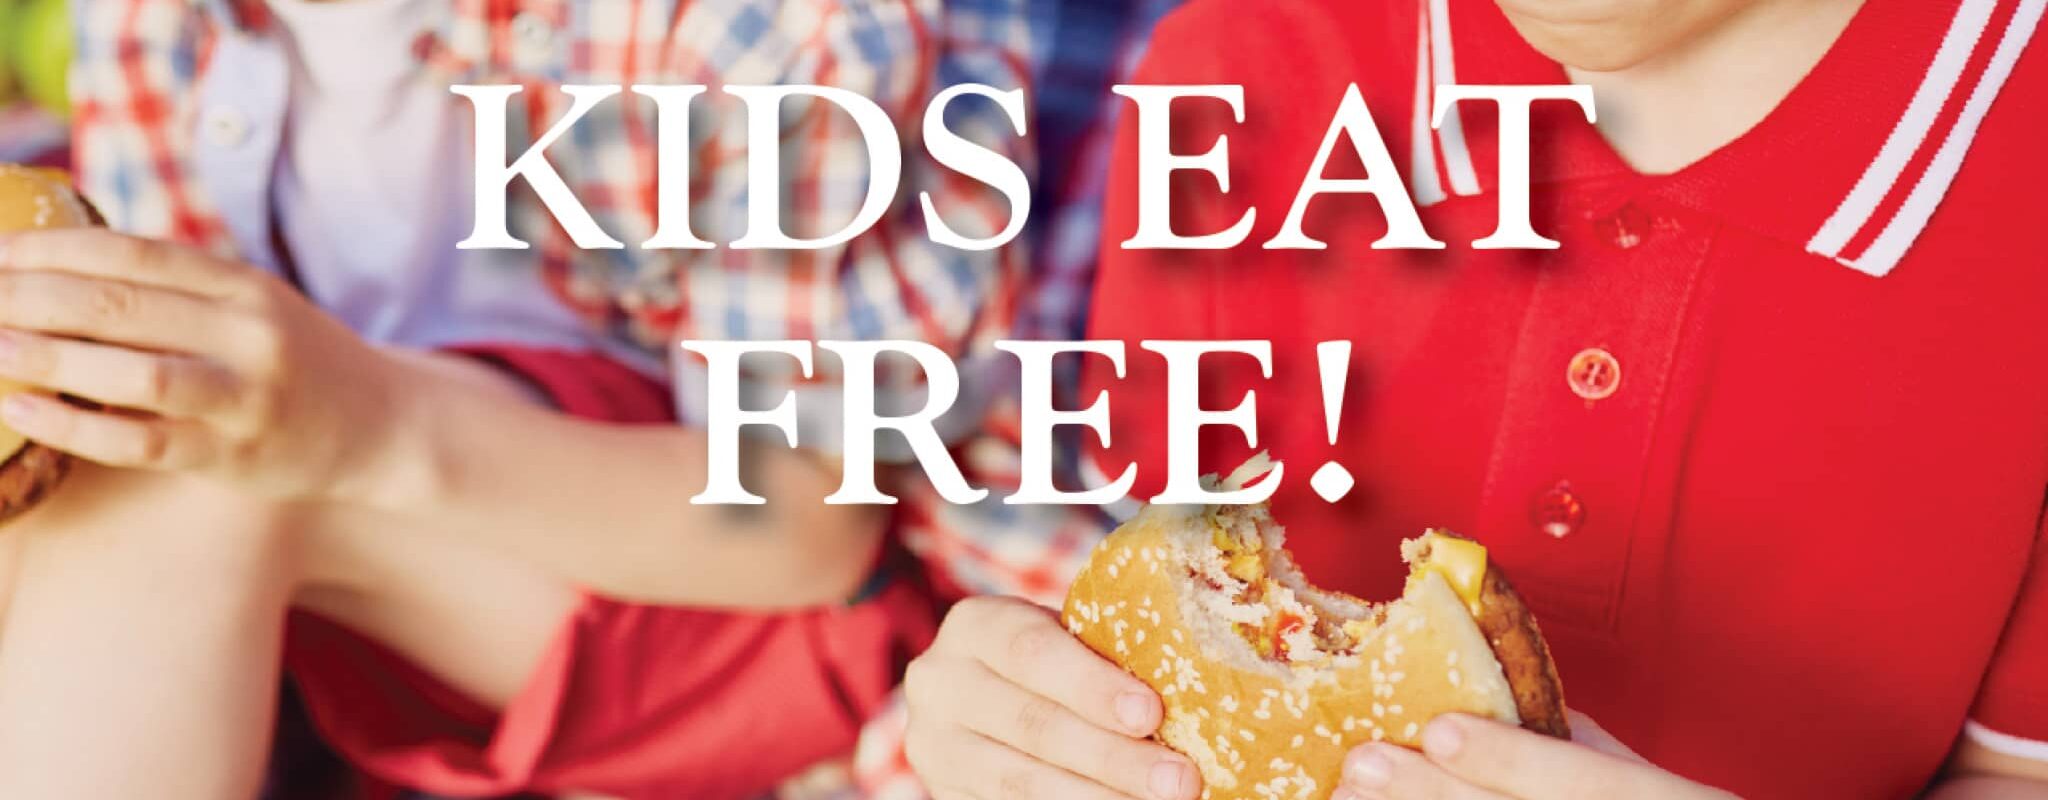 Kids eat free at Cousins